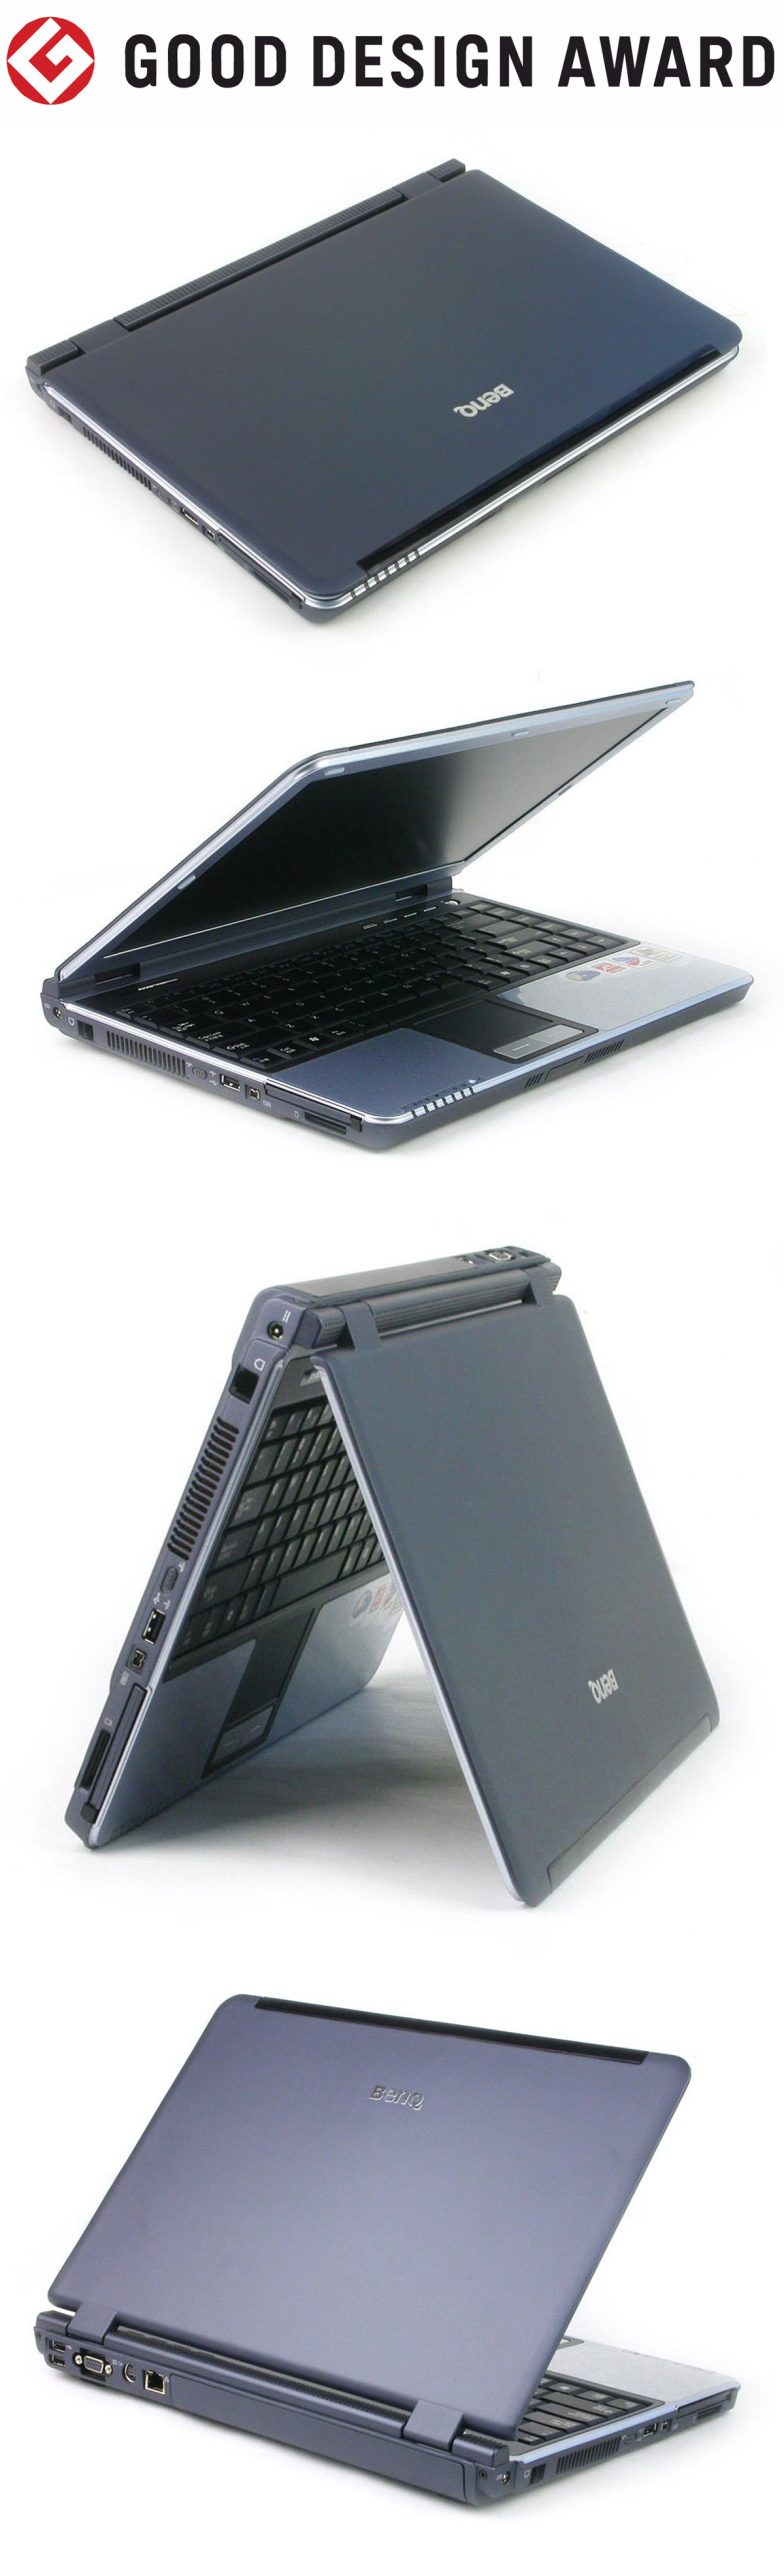 【日本】明基BenQ笔记本电脑Joybook 7000获颁2004年度G-Mark设计大奖（GOOD DESIGN AWARD 2004）